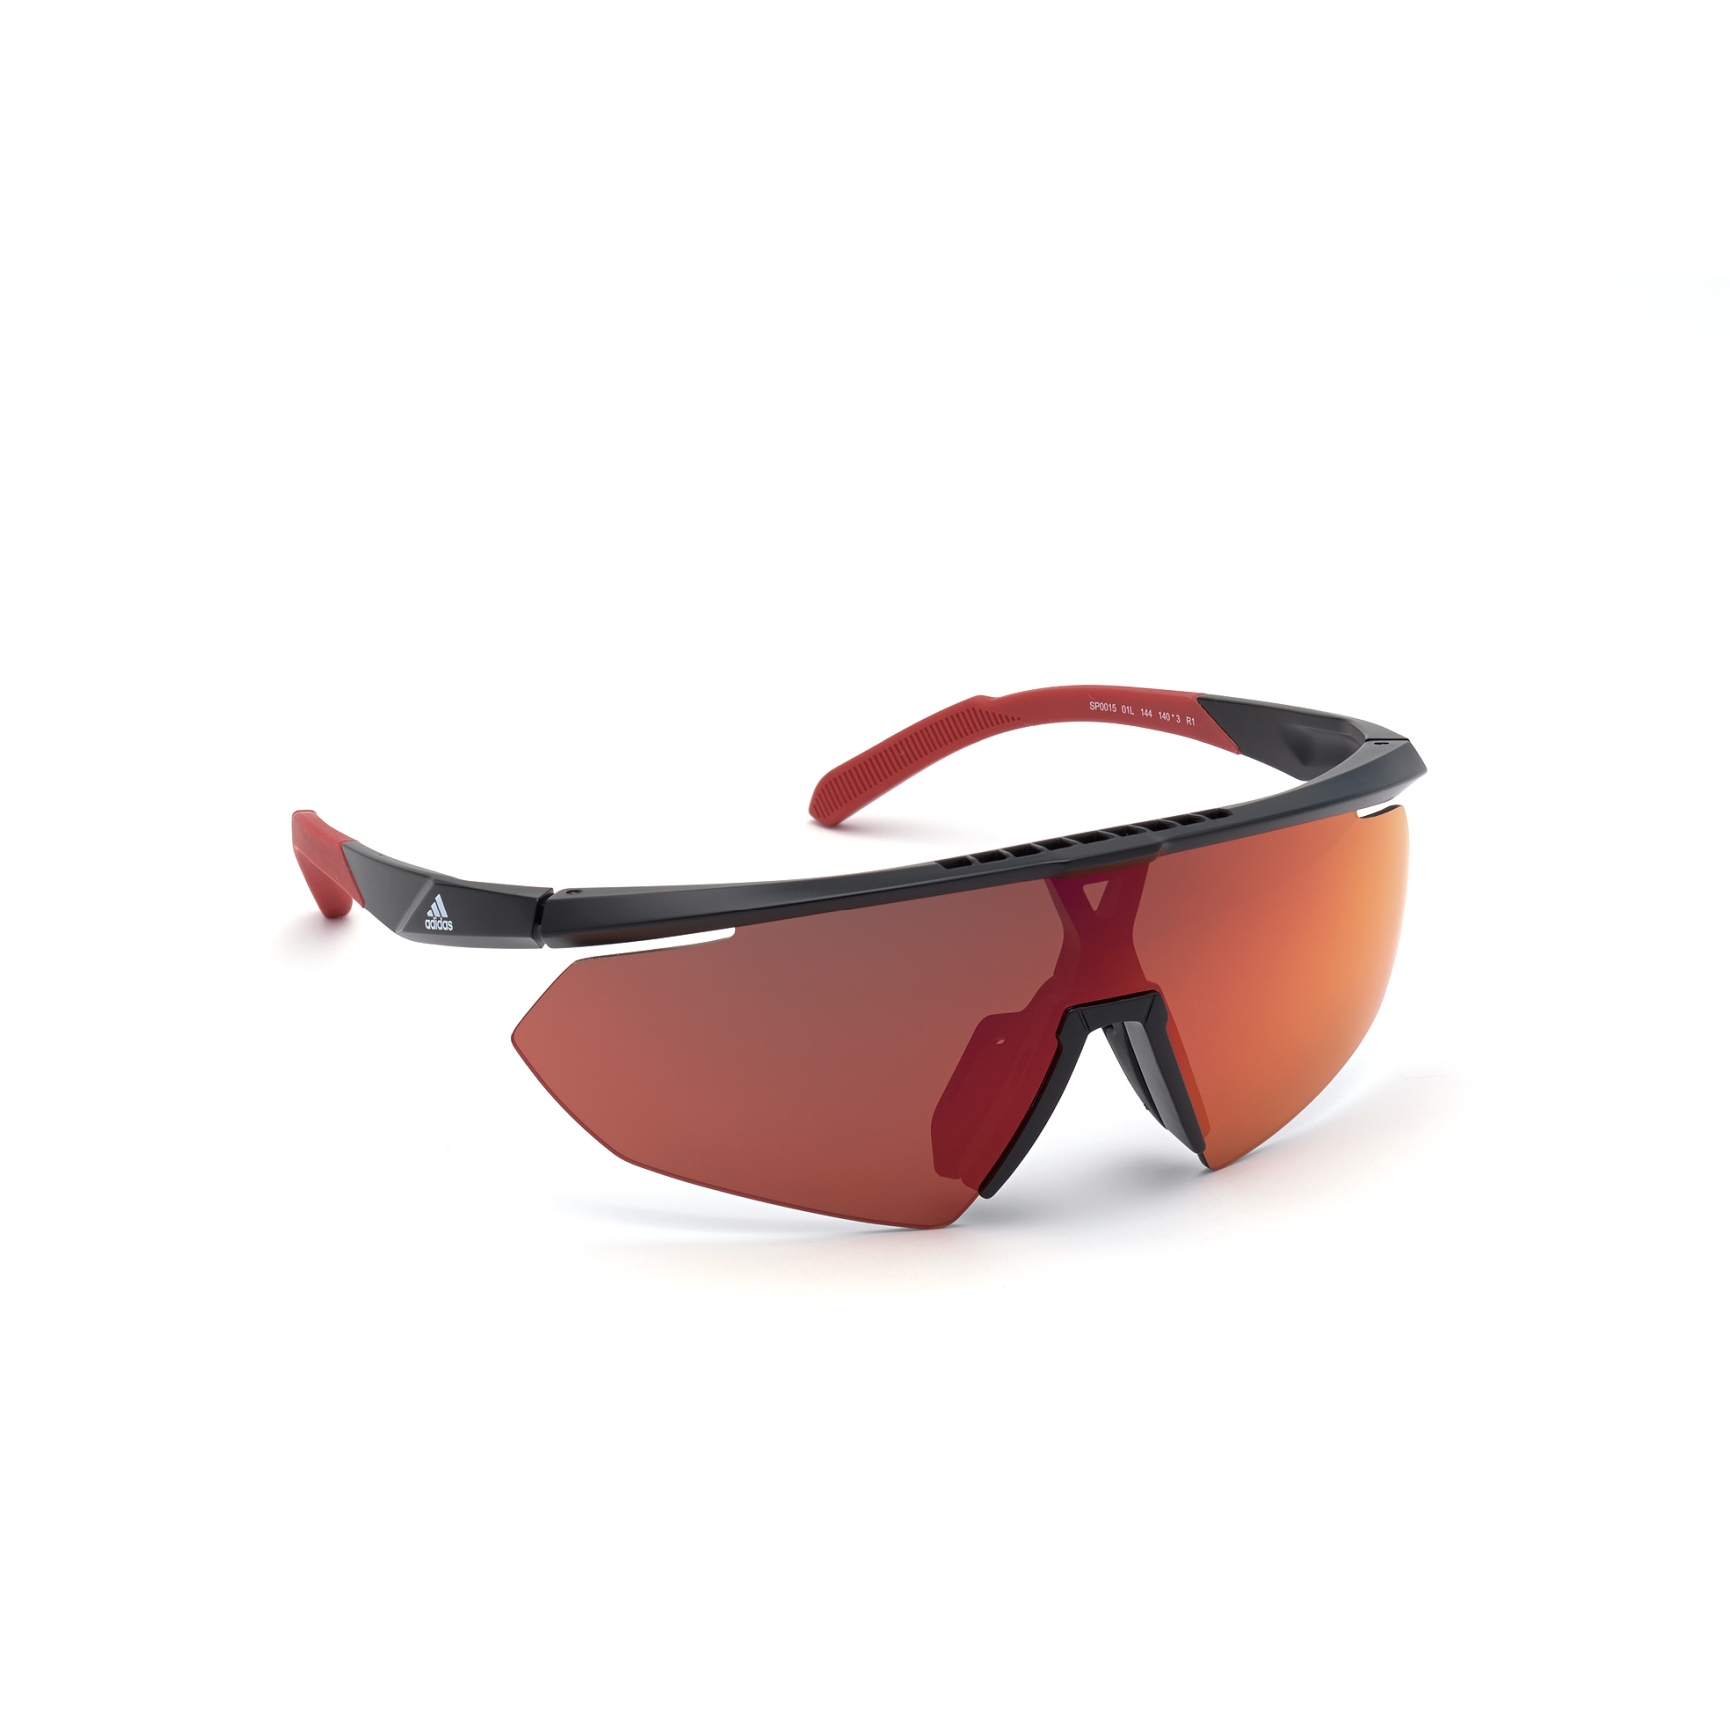 Produktbild von adidas Sp0015 Injected Sonnenbrille - Shiny Black / Contrast Mirror Red + Orange